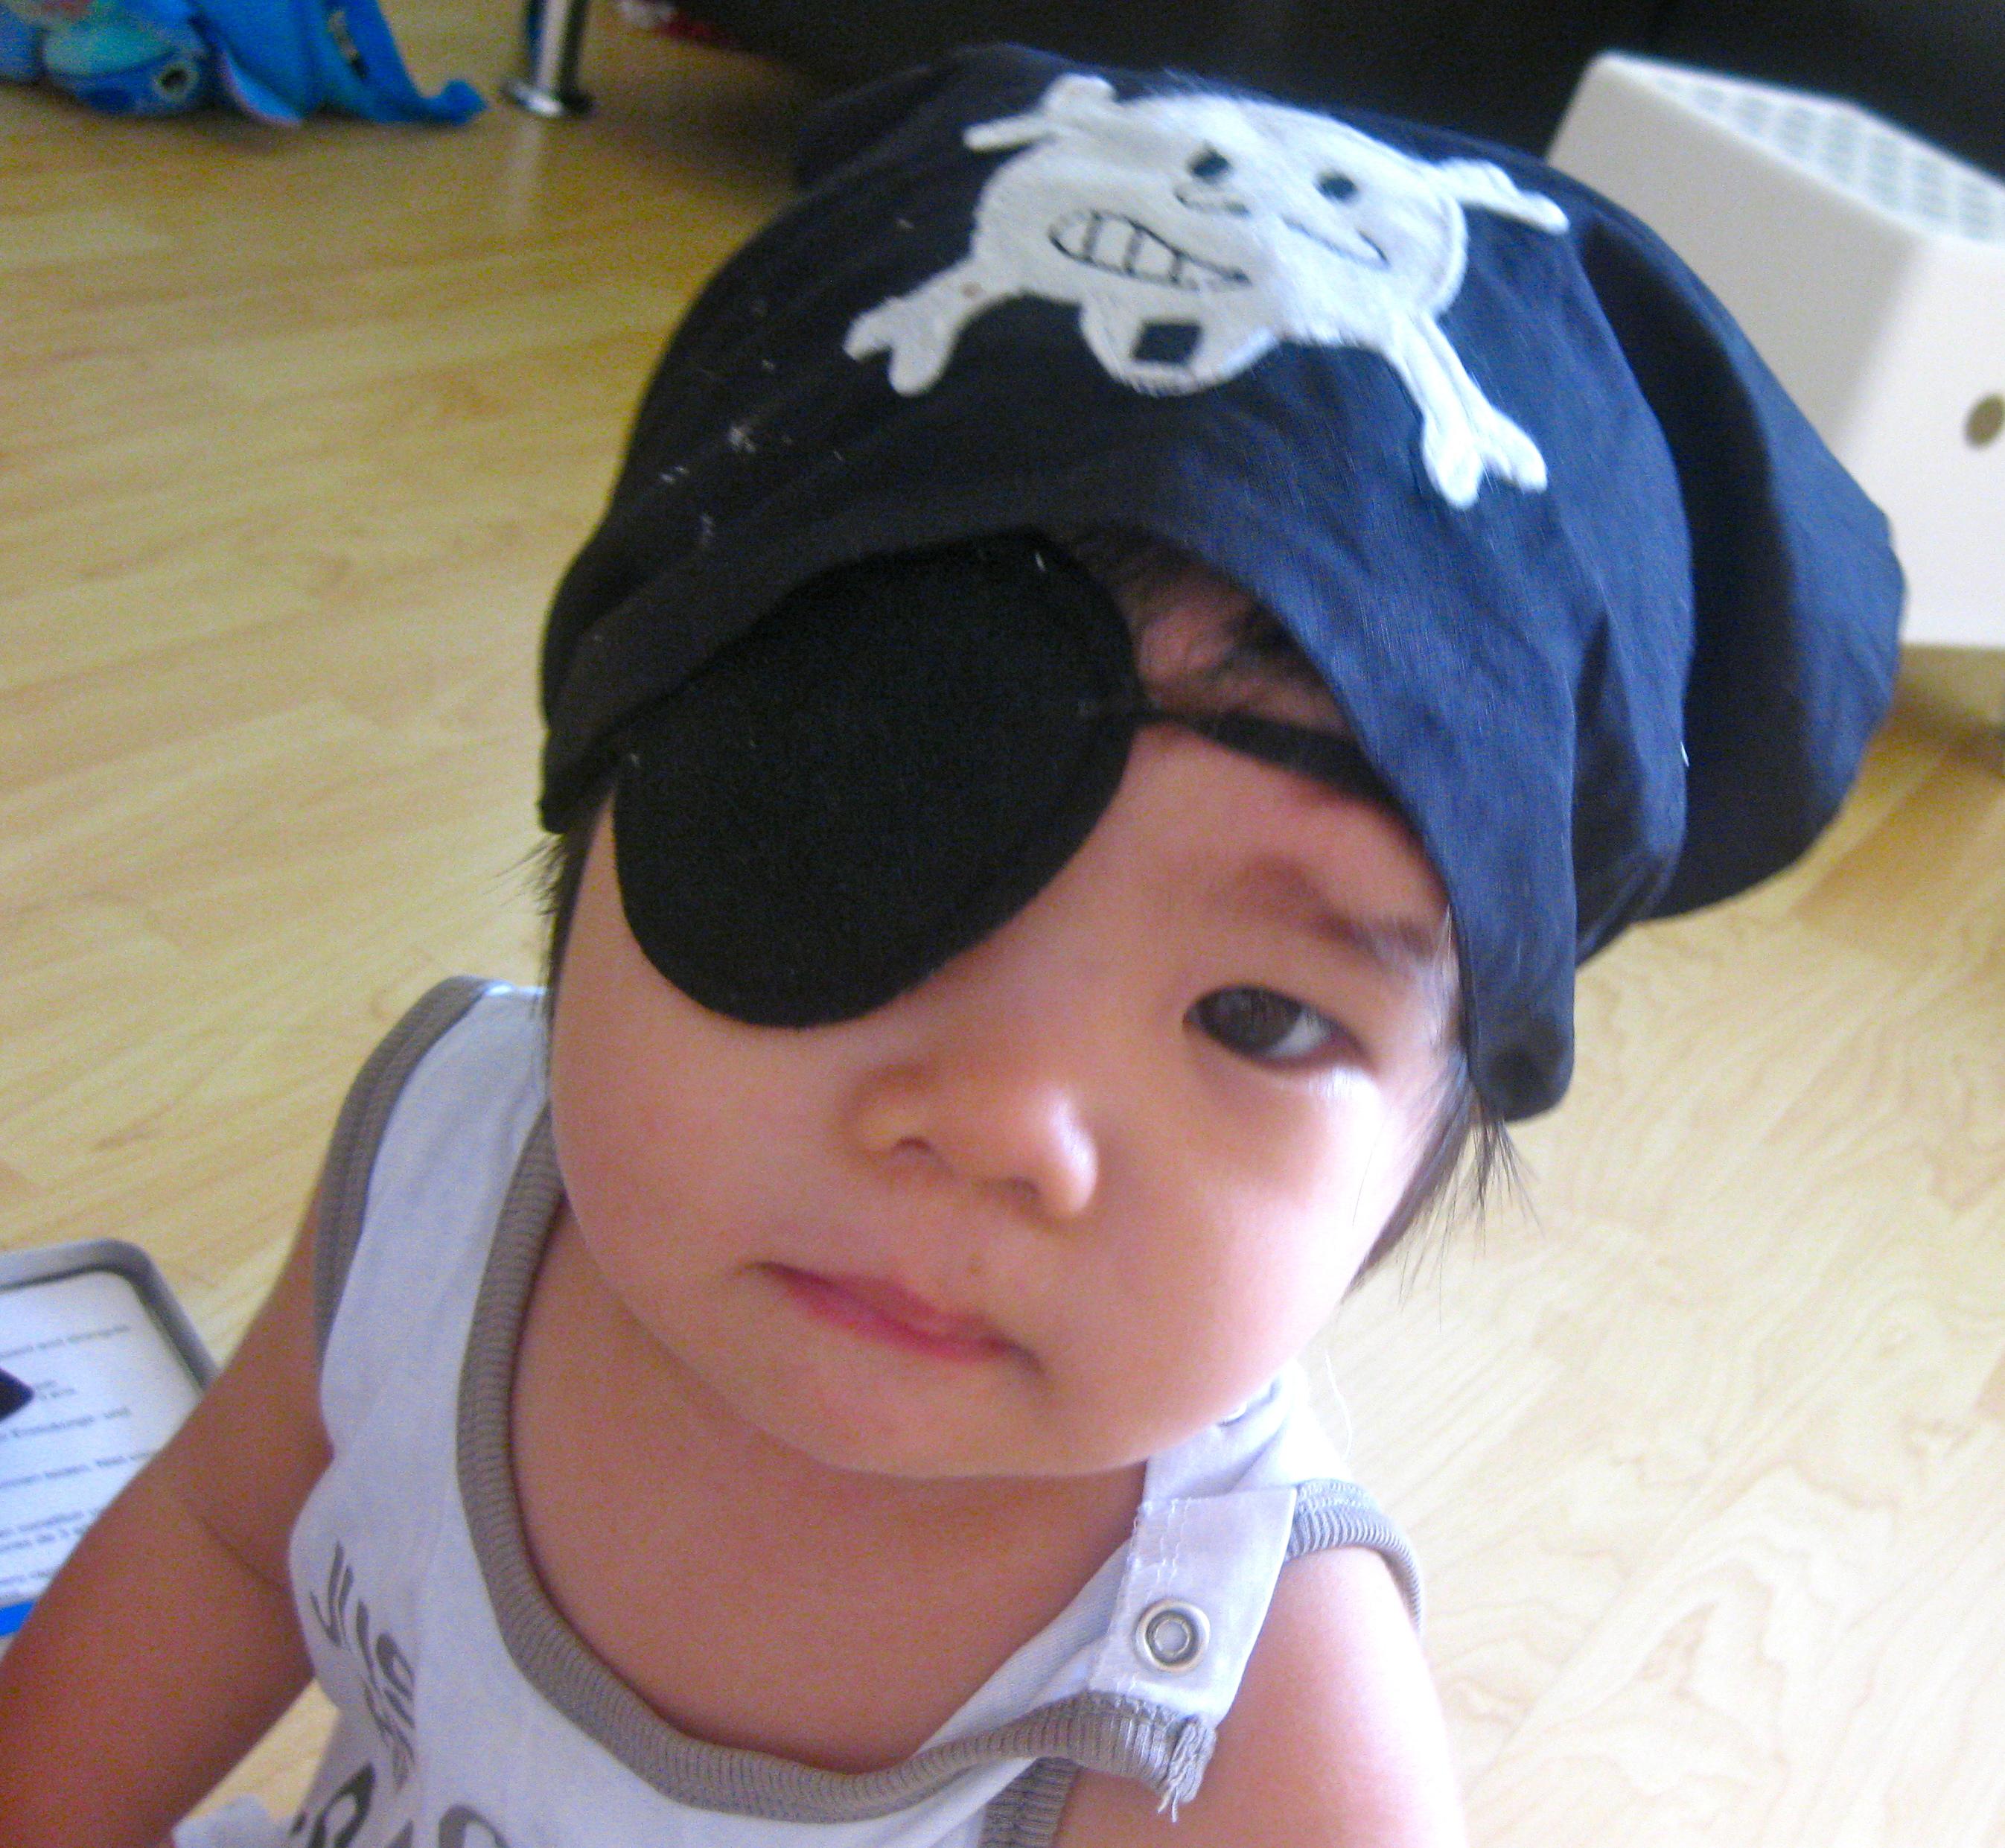 me big scurvy pirate